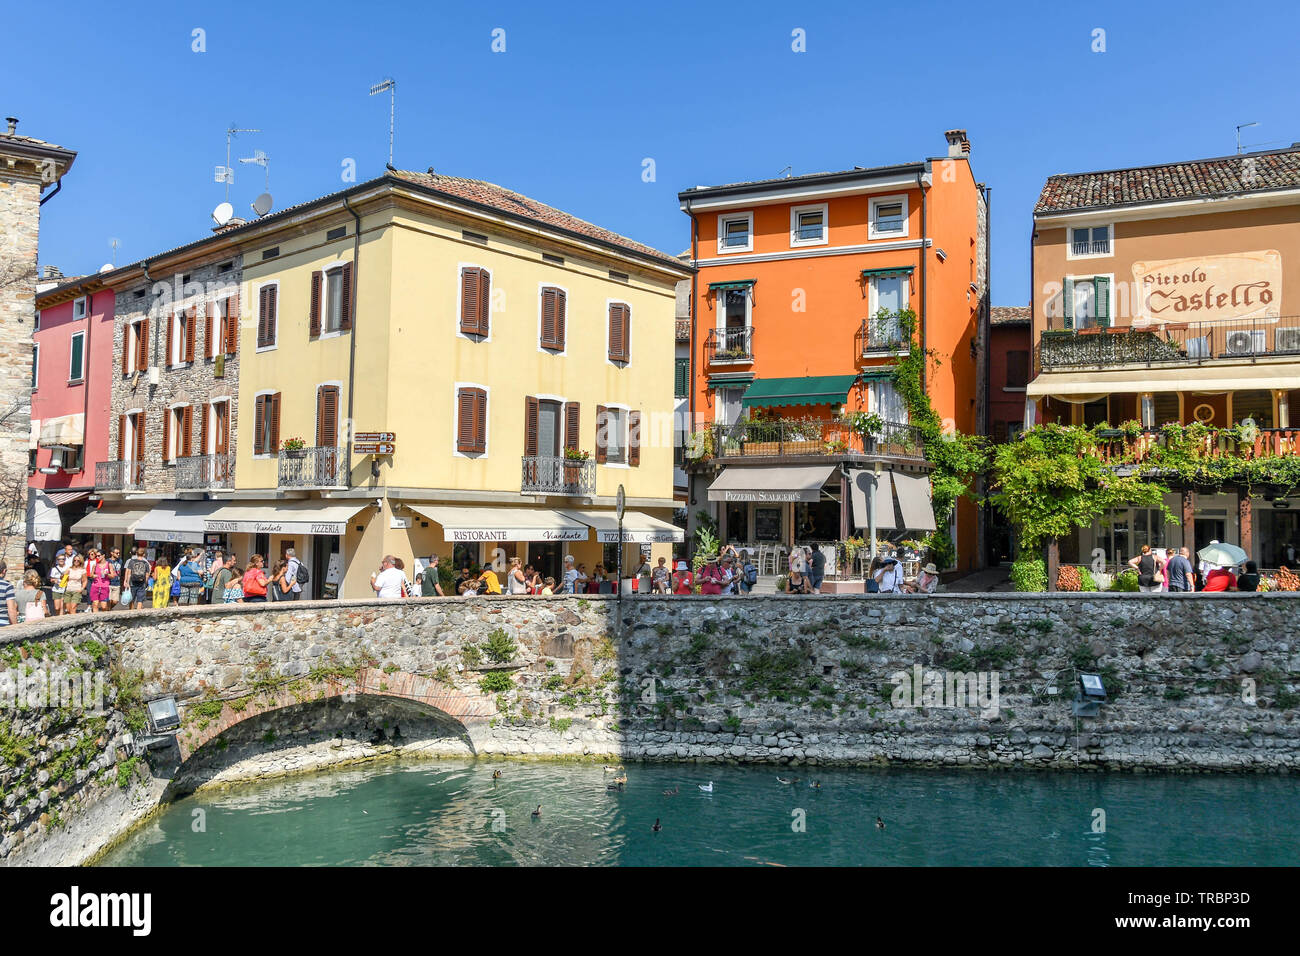 SIRMIONE SUL LAGO DI GARDA, Italia - Settembre 2018: le persone nelle strade che circondano il fossato del castello scaligero nel centro di Sirmione sul Lago di Garda. Foto Stock